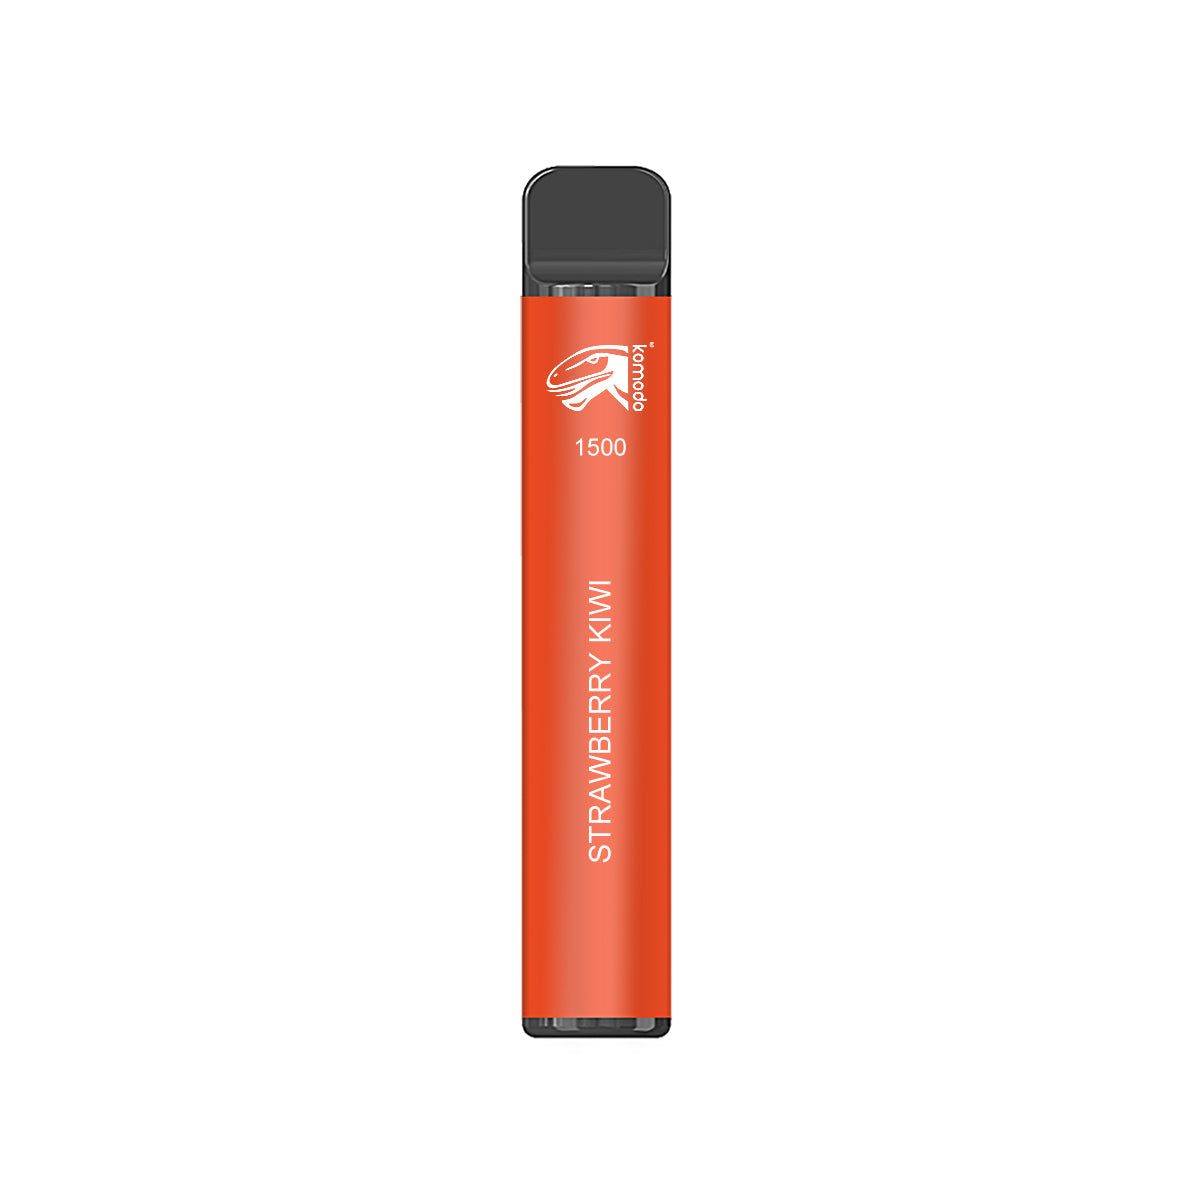 Komodo 1500 Puffs Disposable Vape Prefilled Electronic Cigarette (3pcs)